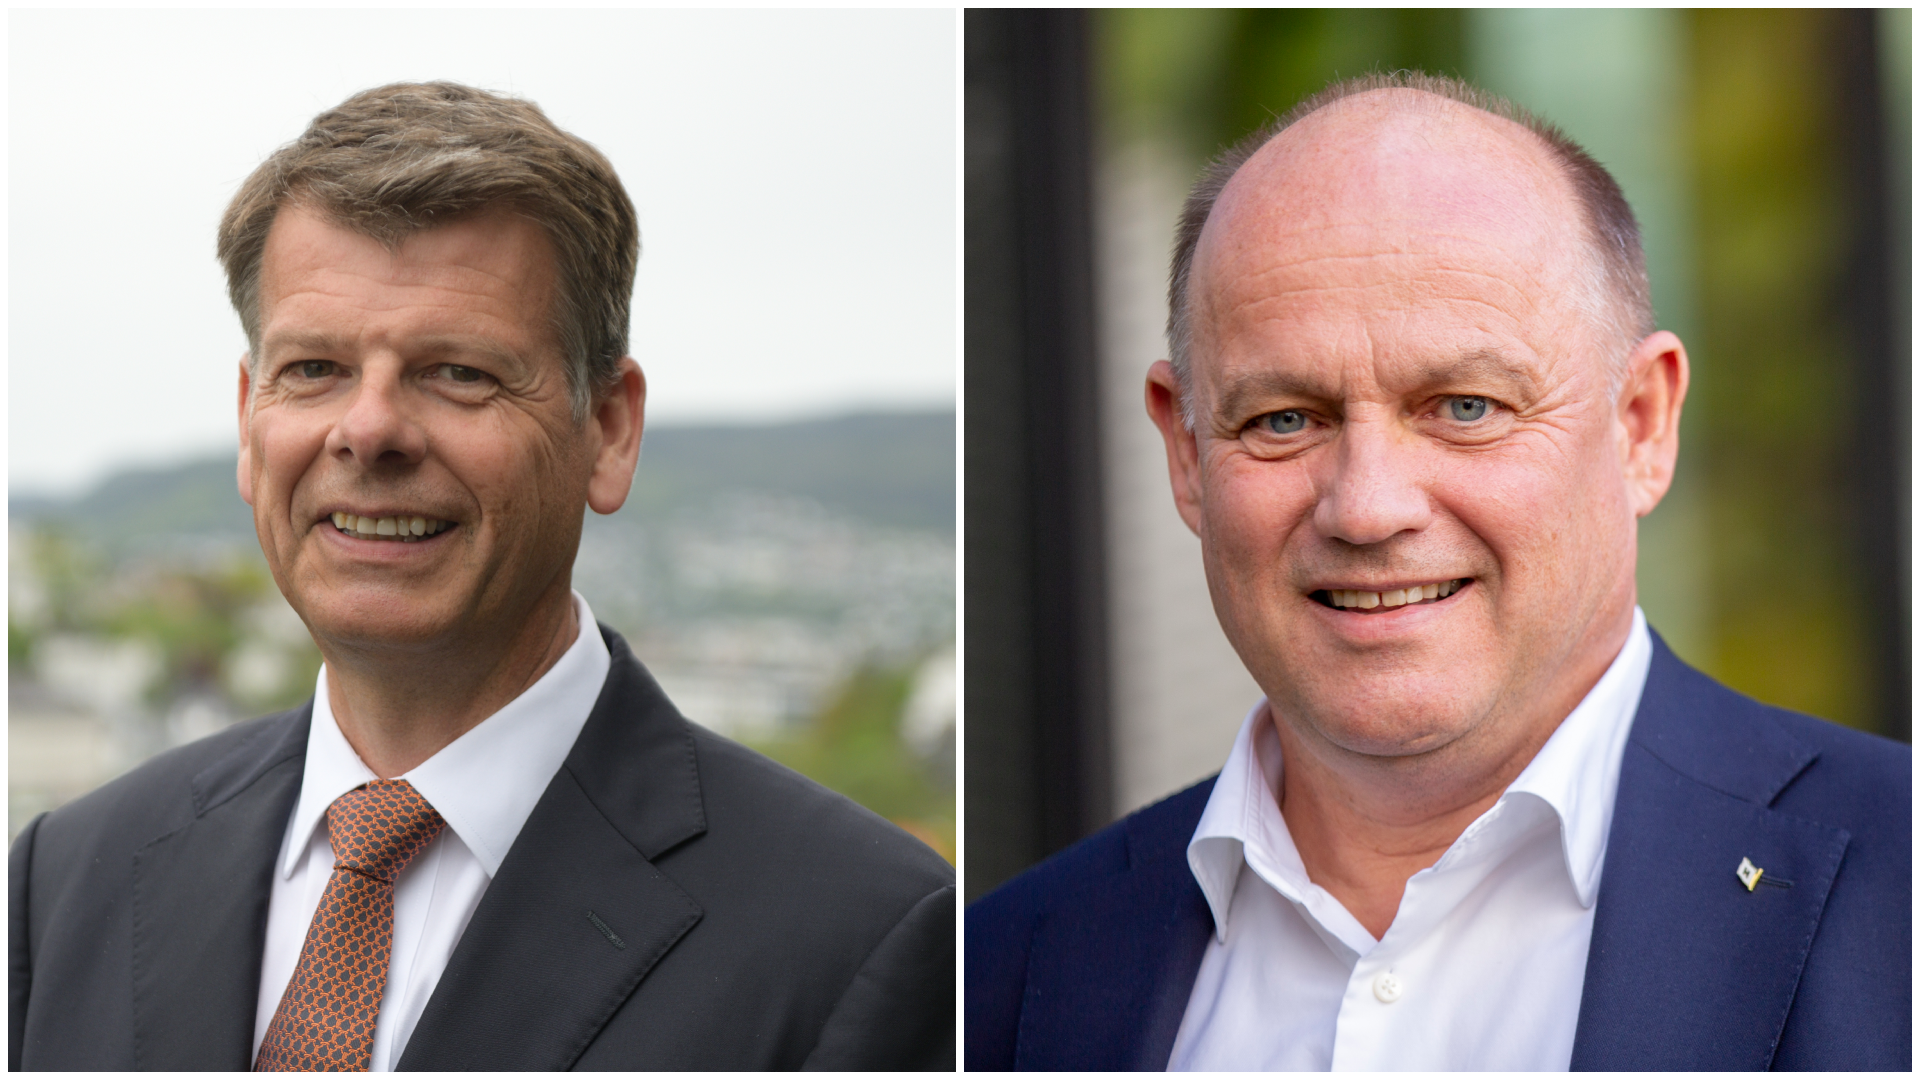 Harald Fotland blev valgt som præsident og Andreas Enger som vicepræsident for Norges Rederiforbund for de næste to år. | Foto: Gunnar Eide / Odfjell og Javad Parsa